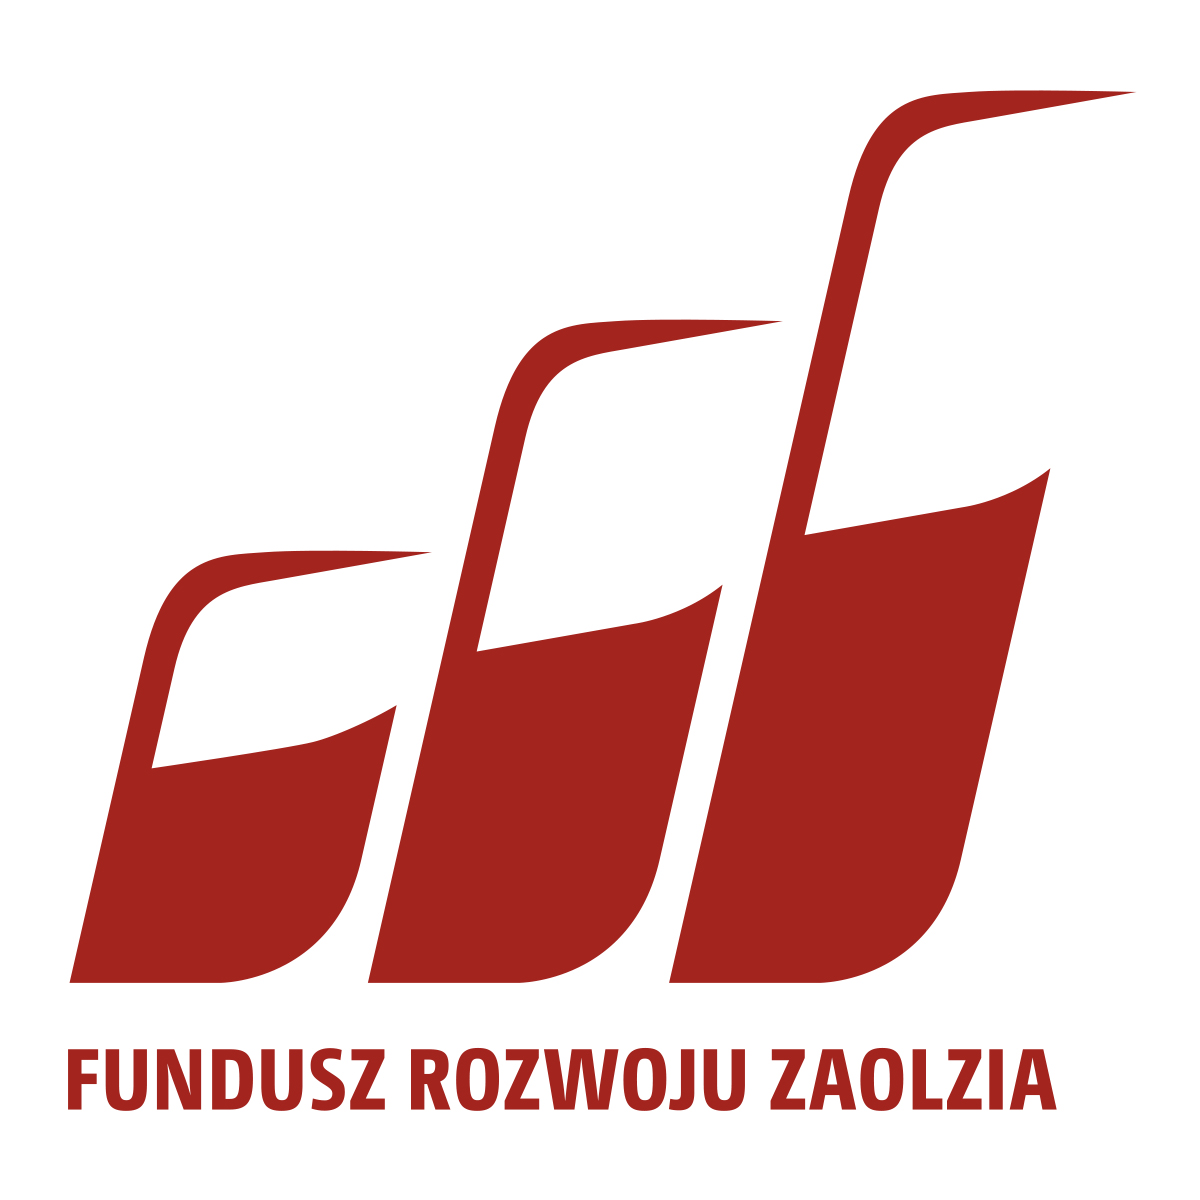 Foto Fundusz Rozwoju Zaolzia